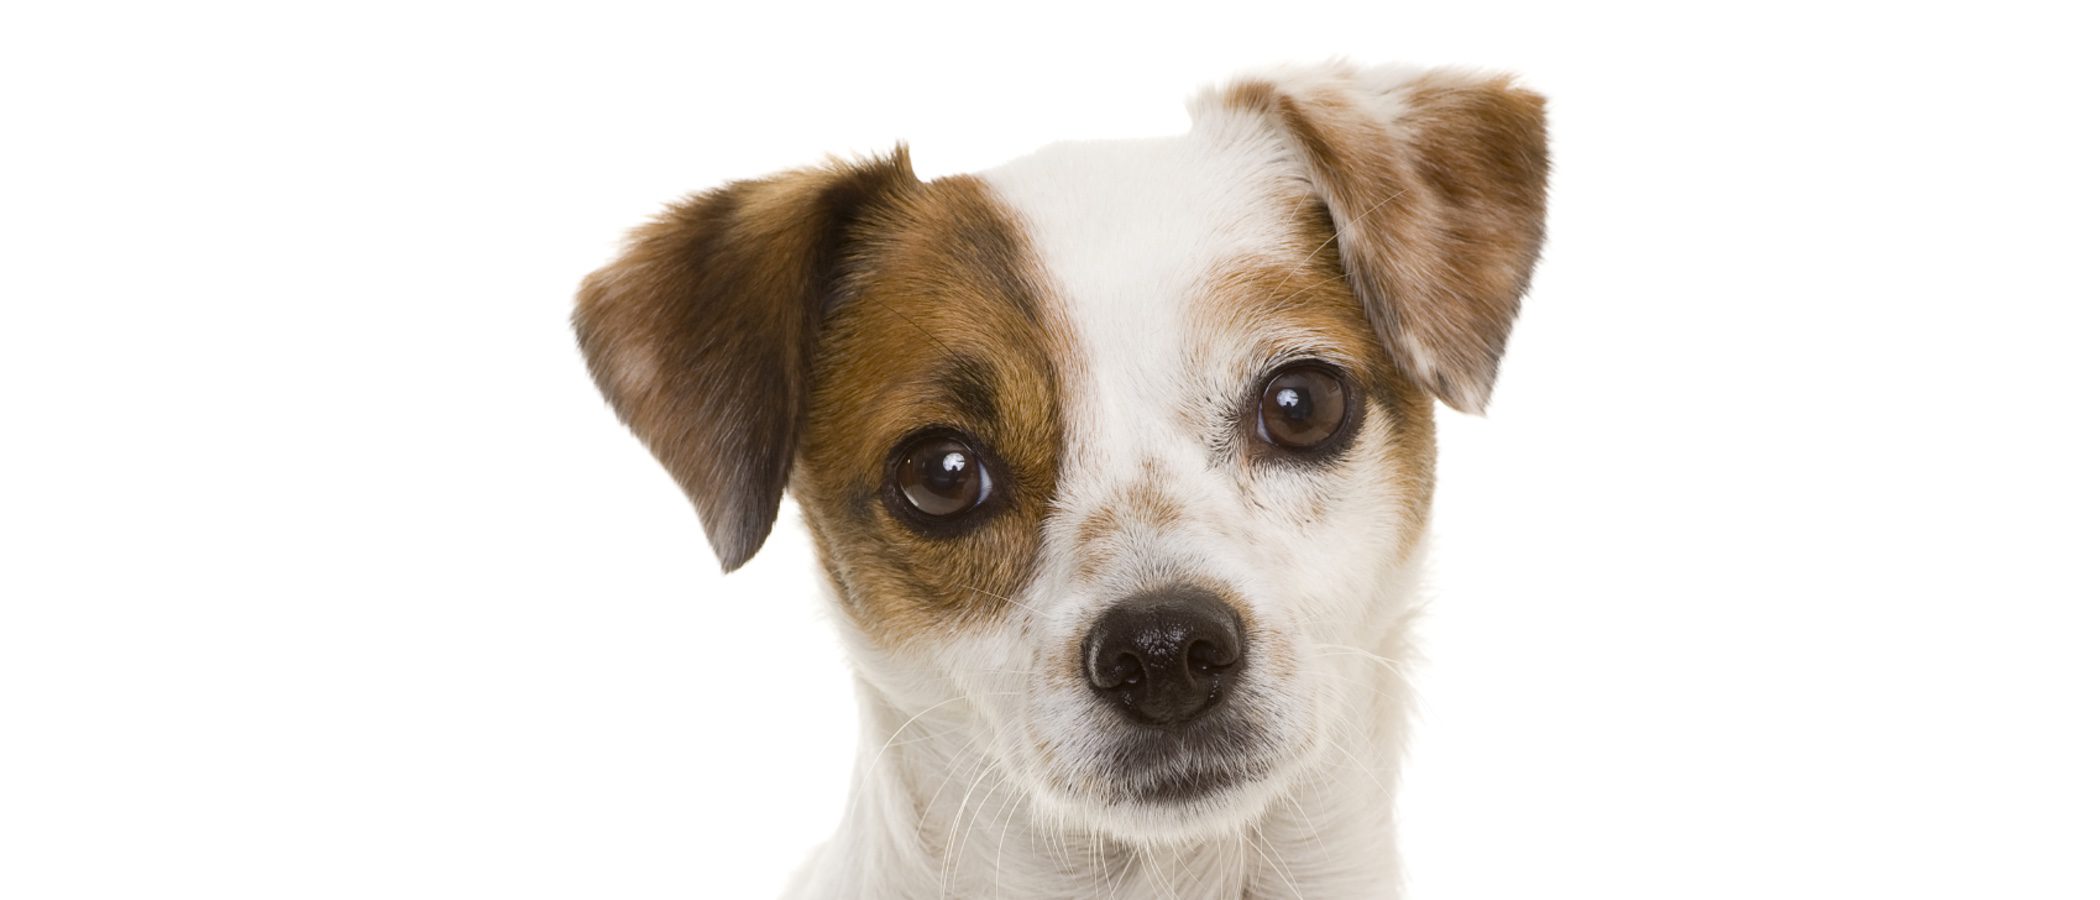 Razas de perros: bodeguero andaluz - Mascotas